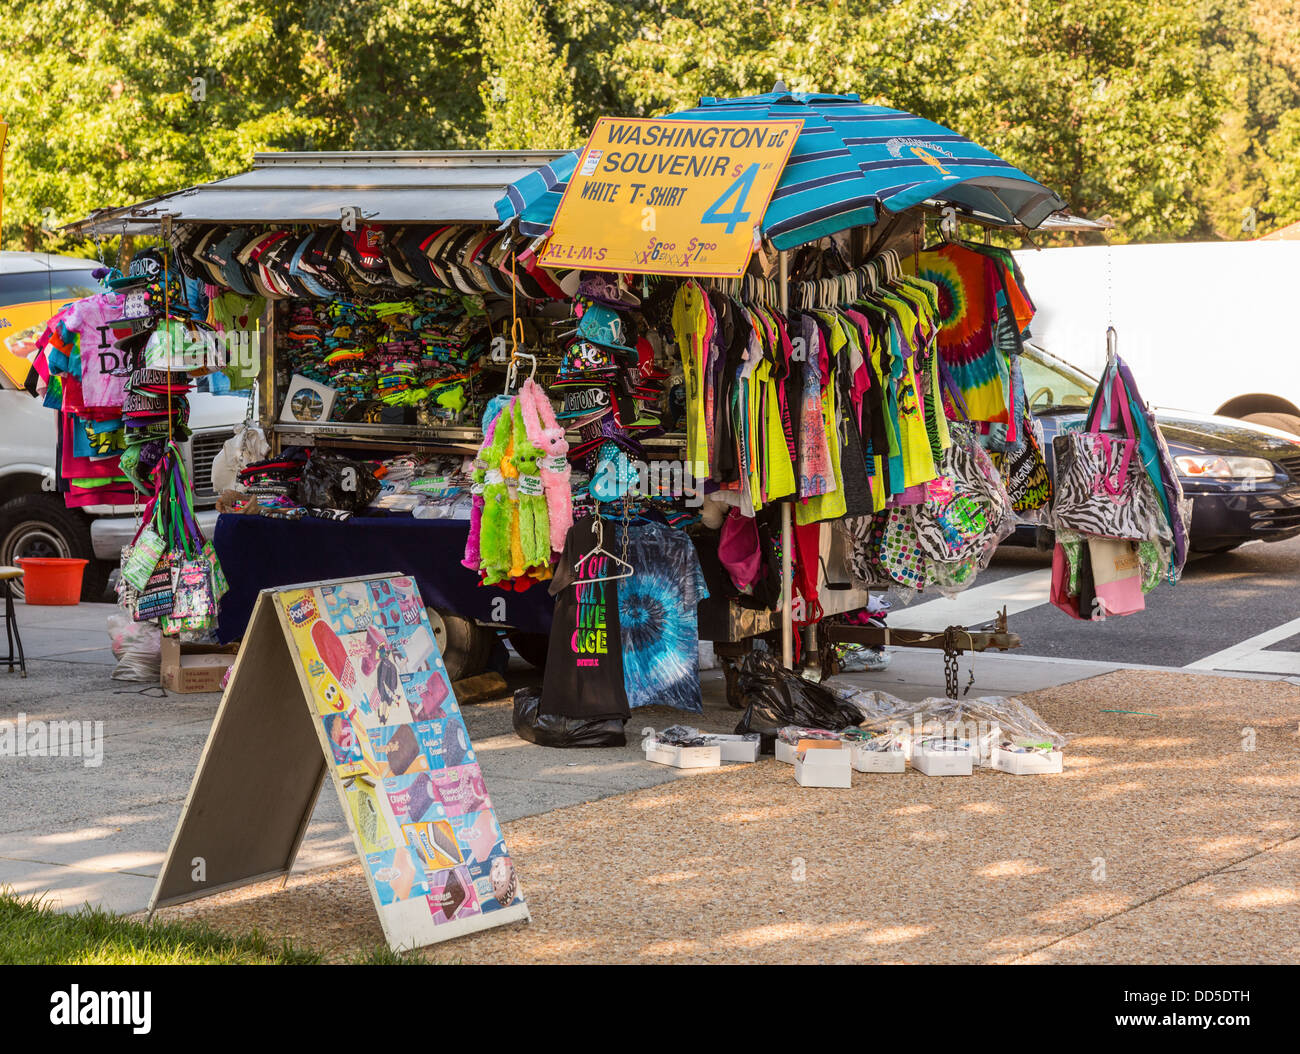 Typische Straße Verkäufer Verkauf von Souvenir T-shirts und Geschenke in Washington DC, USA Stockfoto